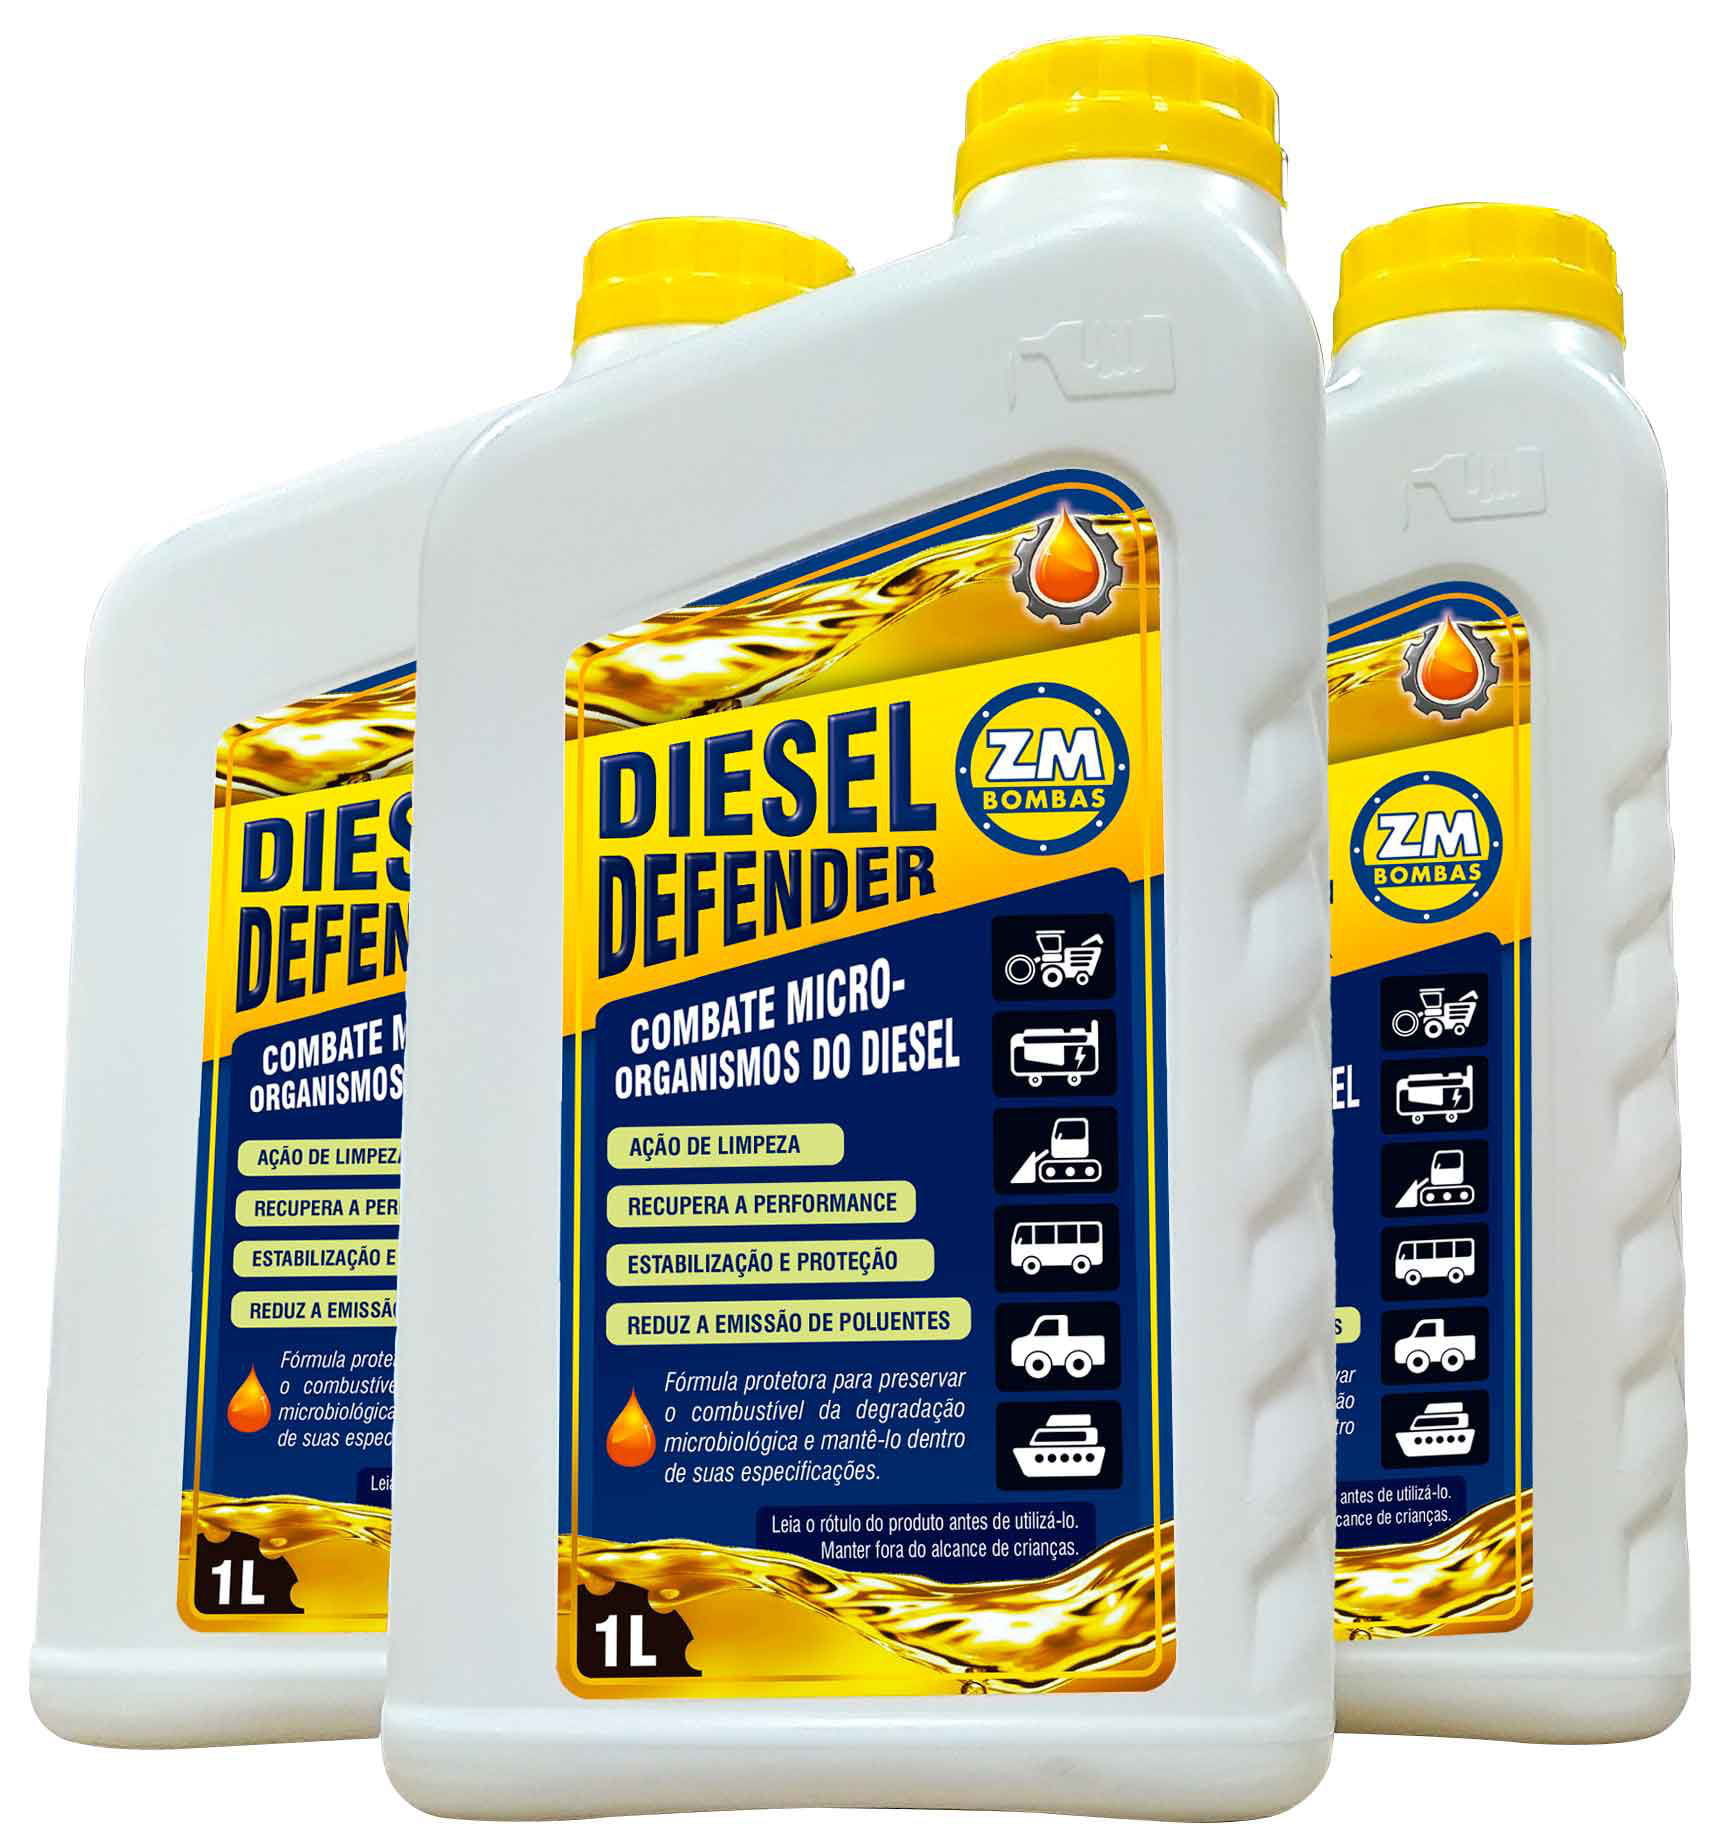 Diesel Defender ZM - Combate micro-organismos do diesel